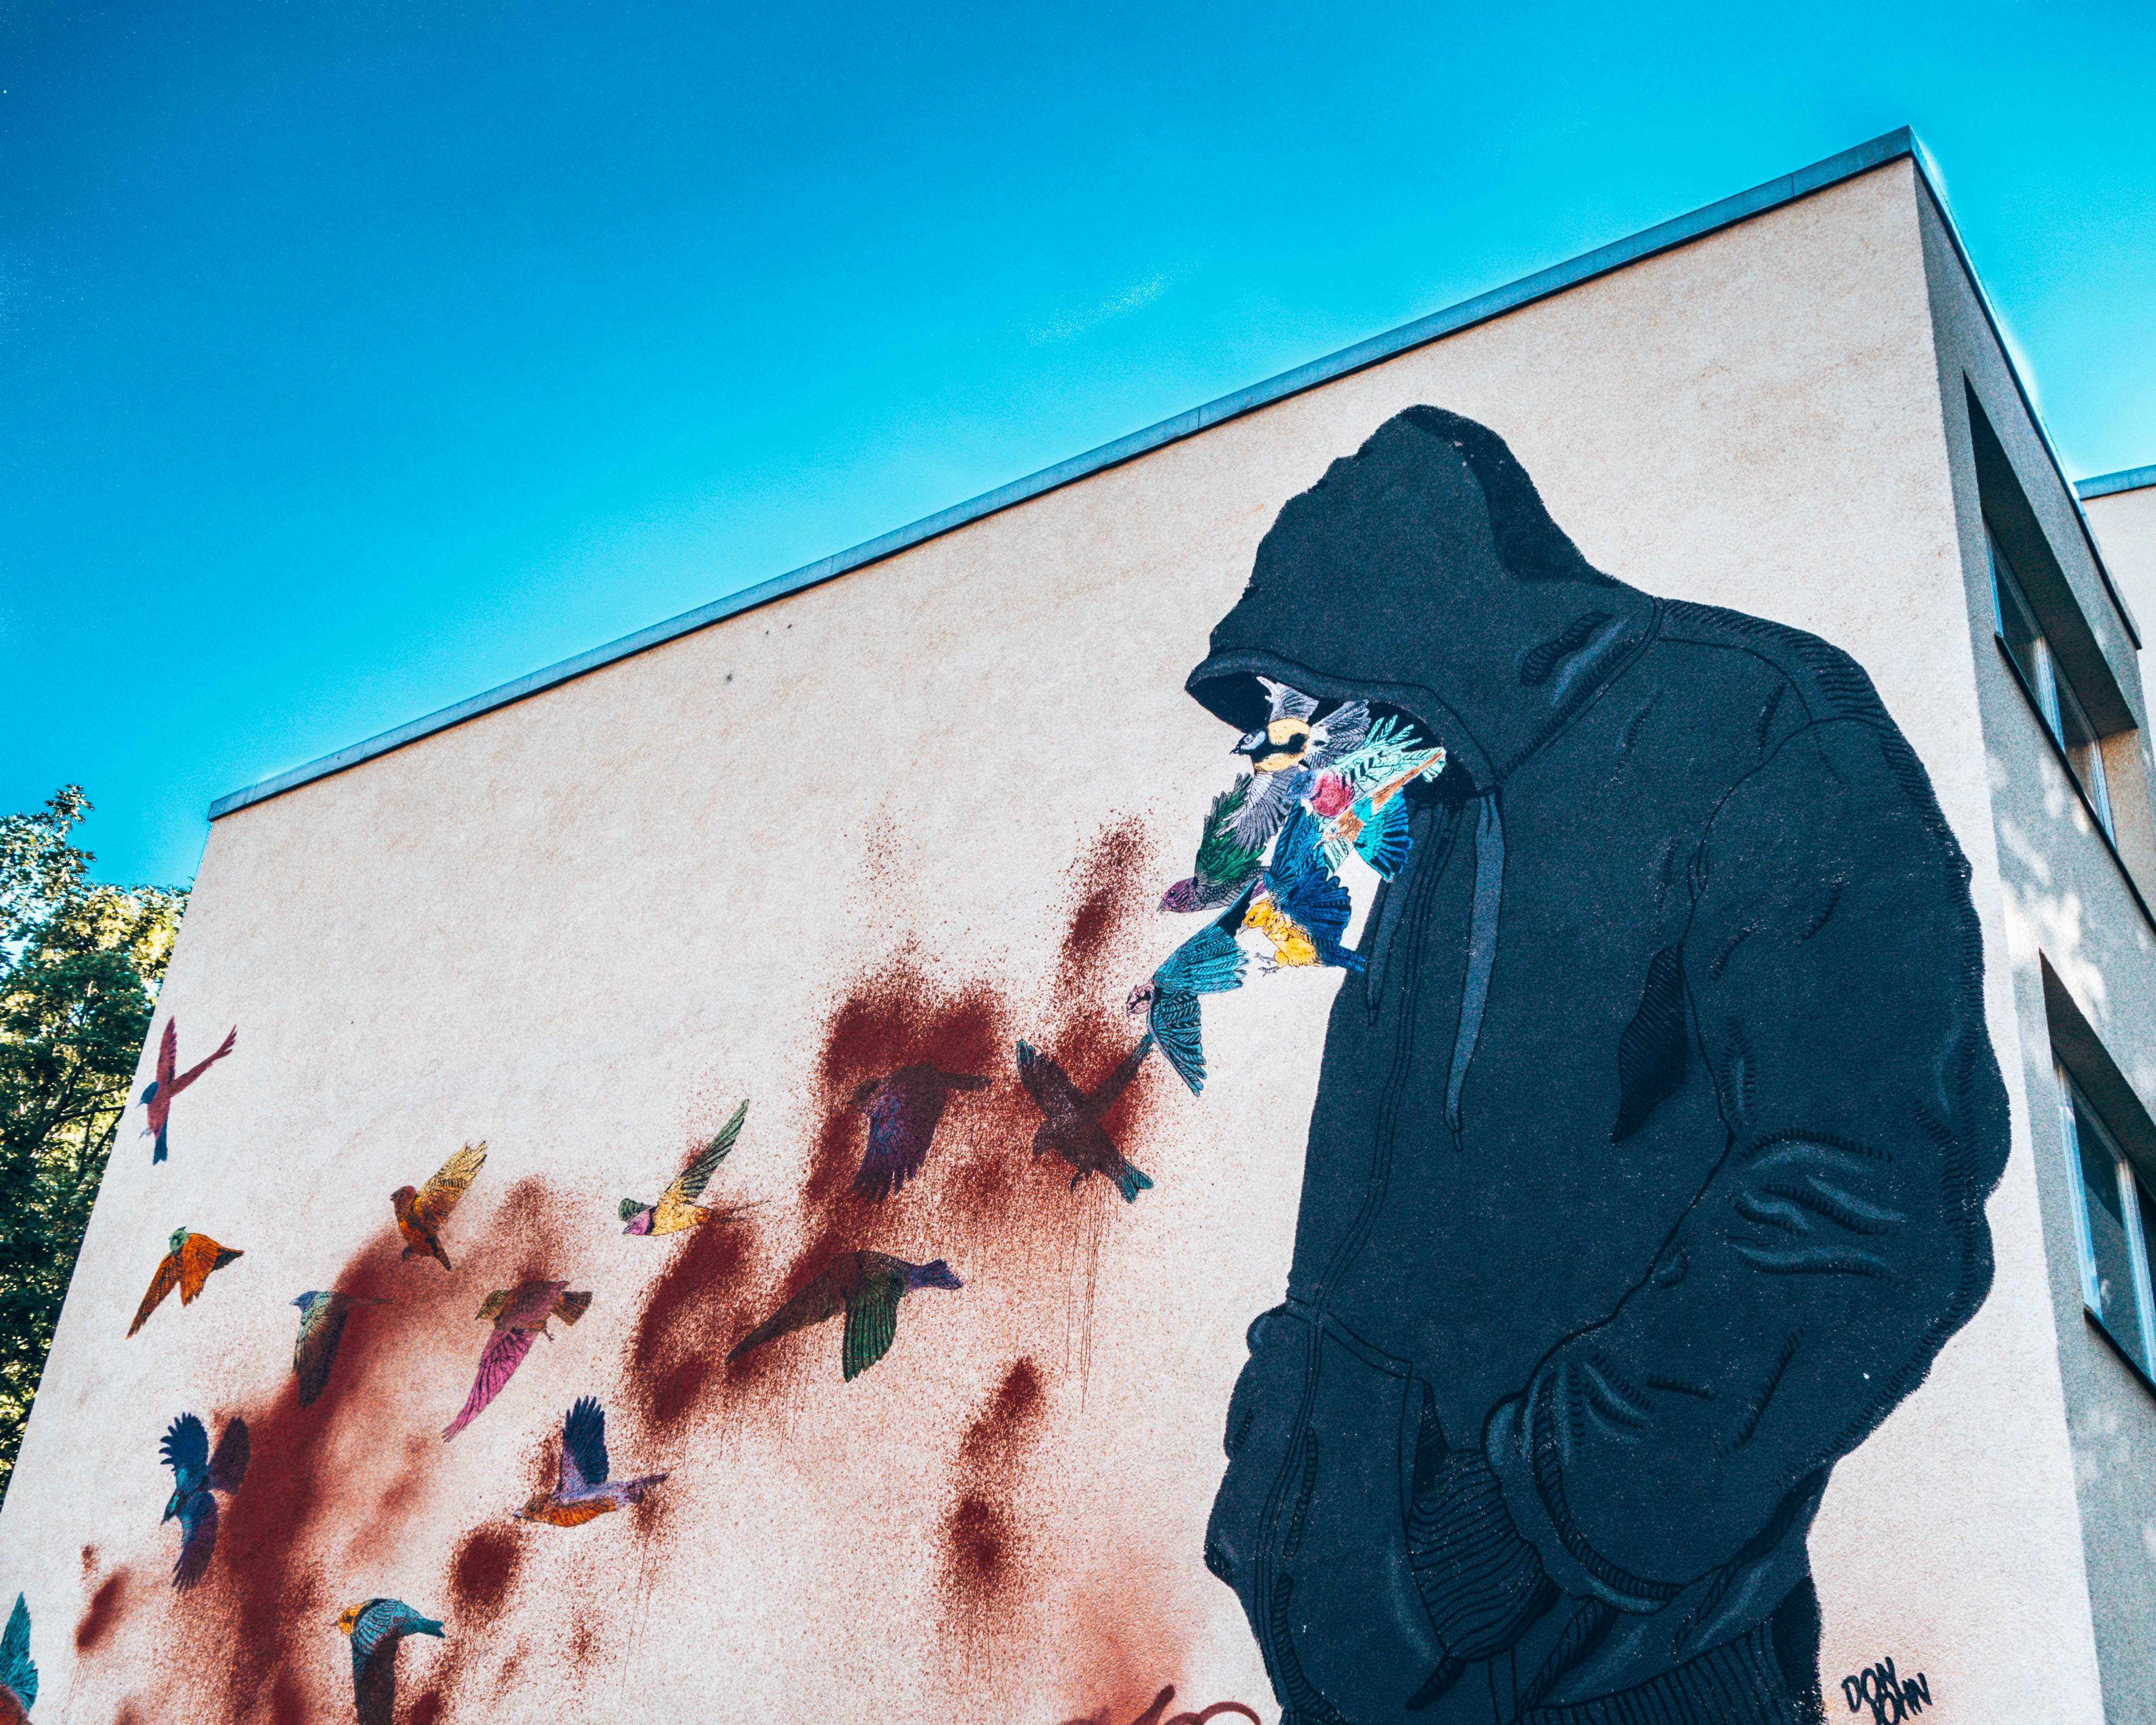 Street art in Berlin mural